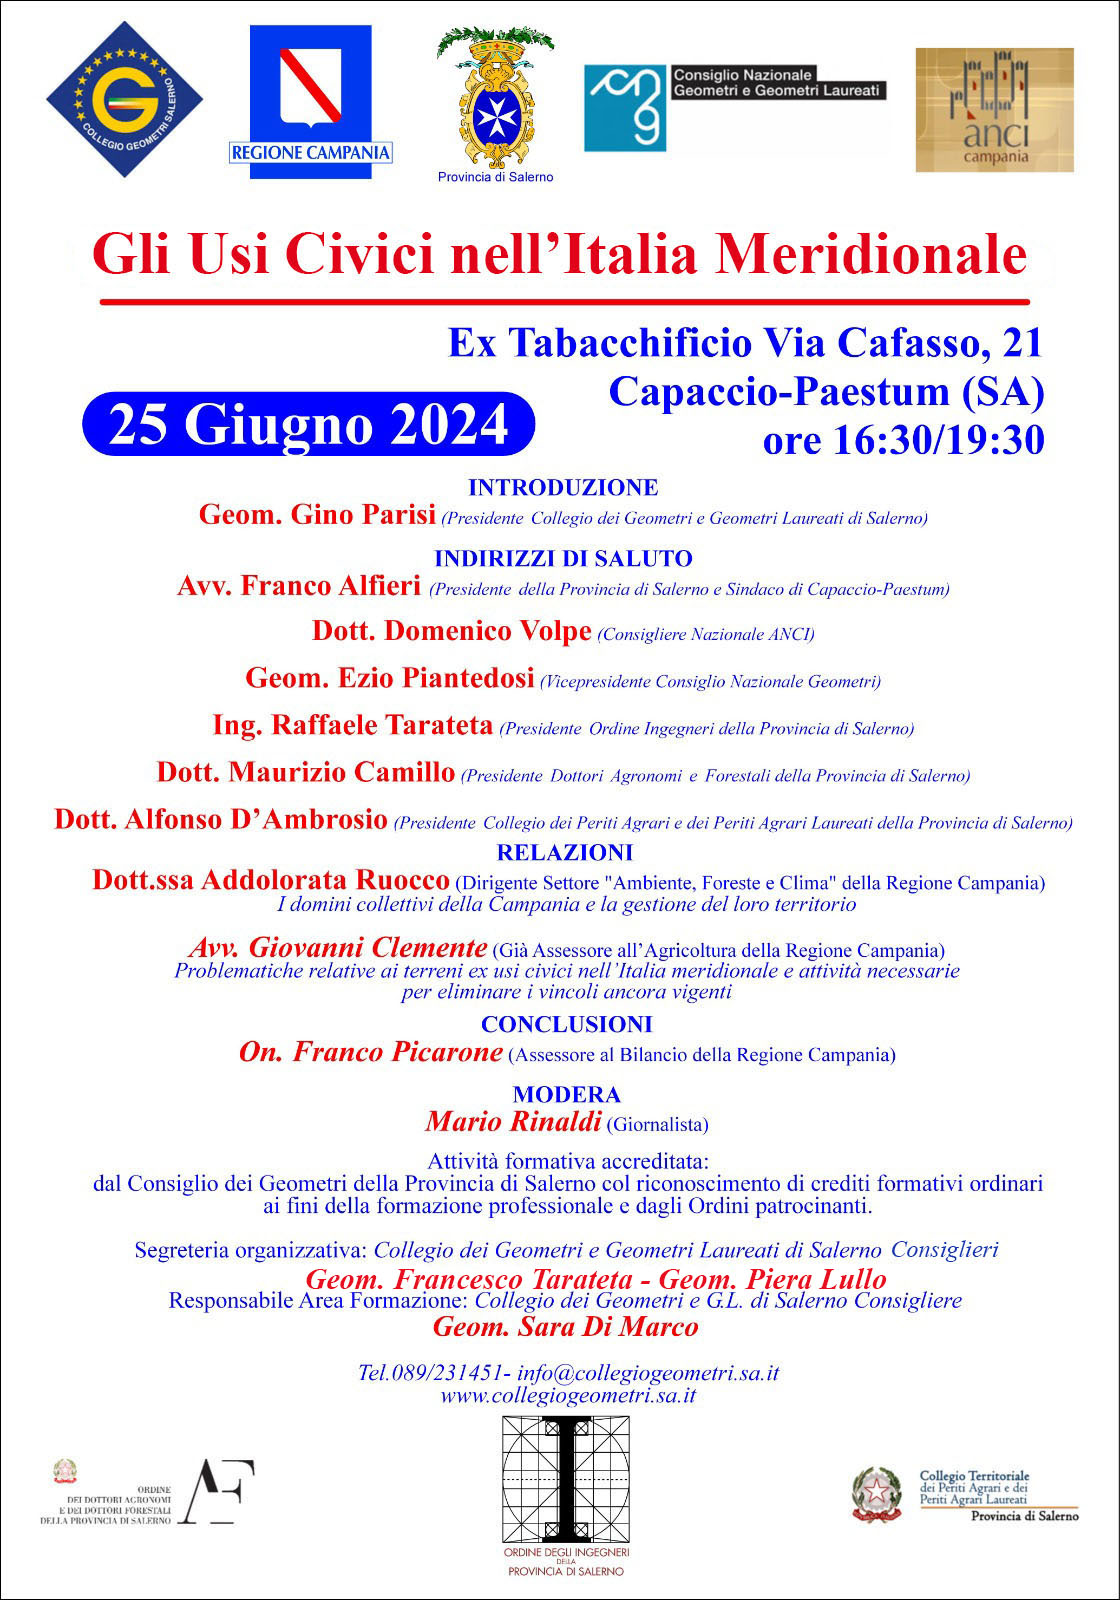 Capaccio Paestum: Geometri, all’ex Tabacchificio convegno “Gli Usi Civici nell’Italia Meridionale”